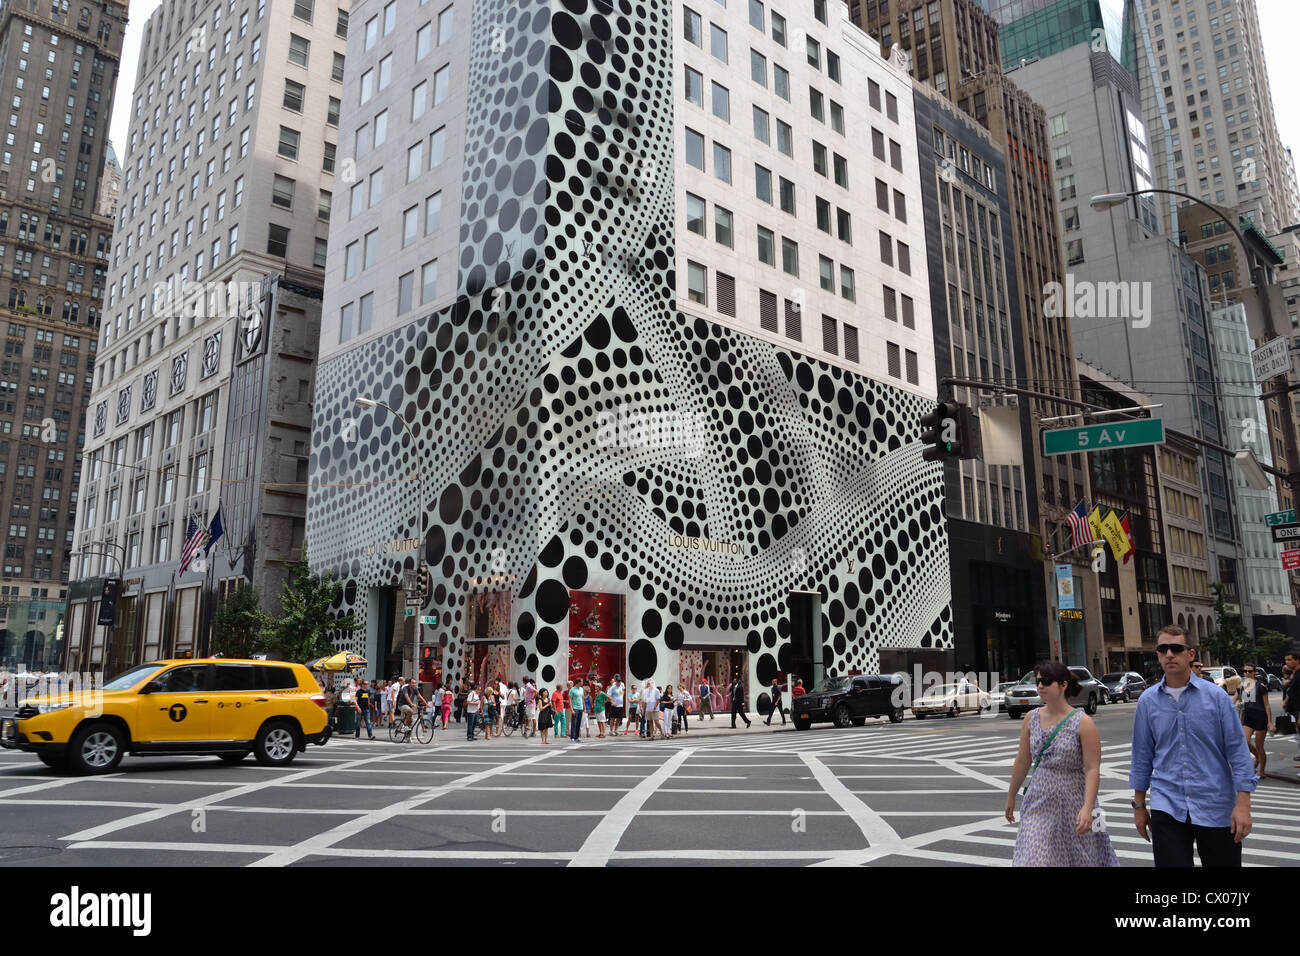 Louis Vuitton-Geschäft, 5th Avenue, New York, Vereinigte Staaten von Amerika Stockfotografie - Alamy